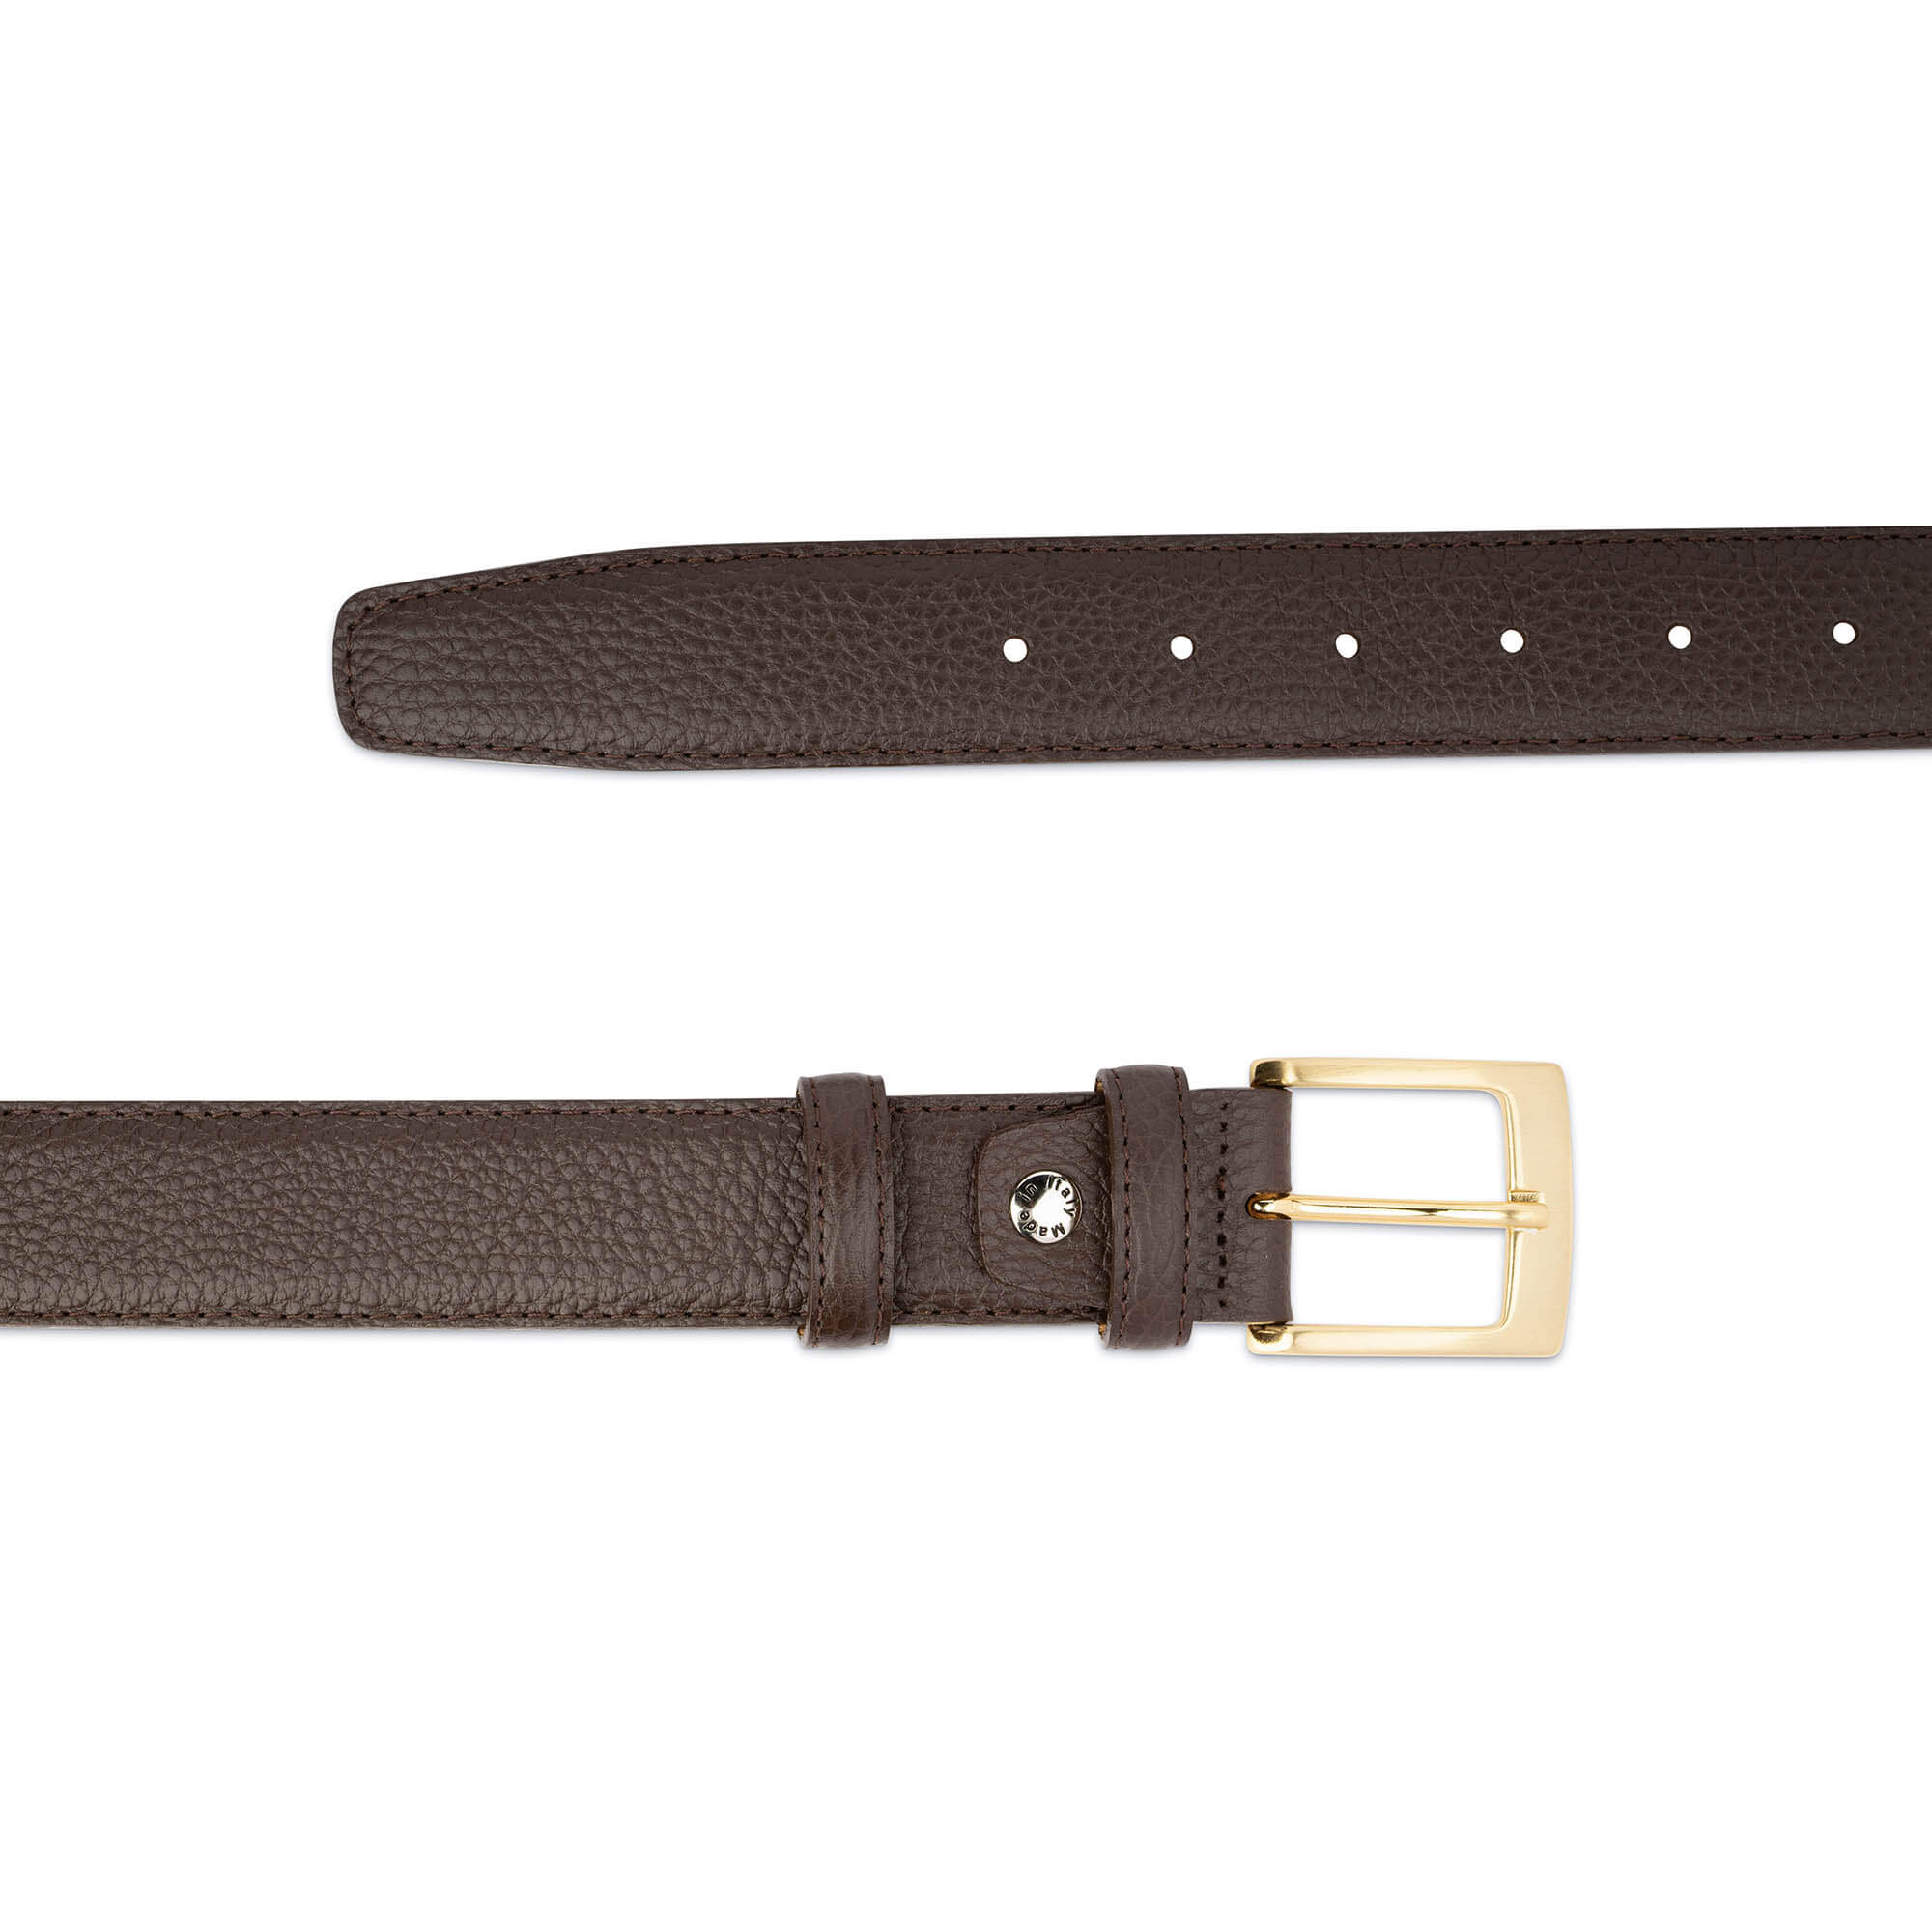 Buy Mens Brown Belt With Gold Buckle | LeatherBeltsOnline.com